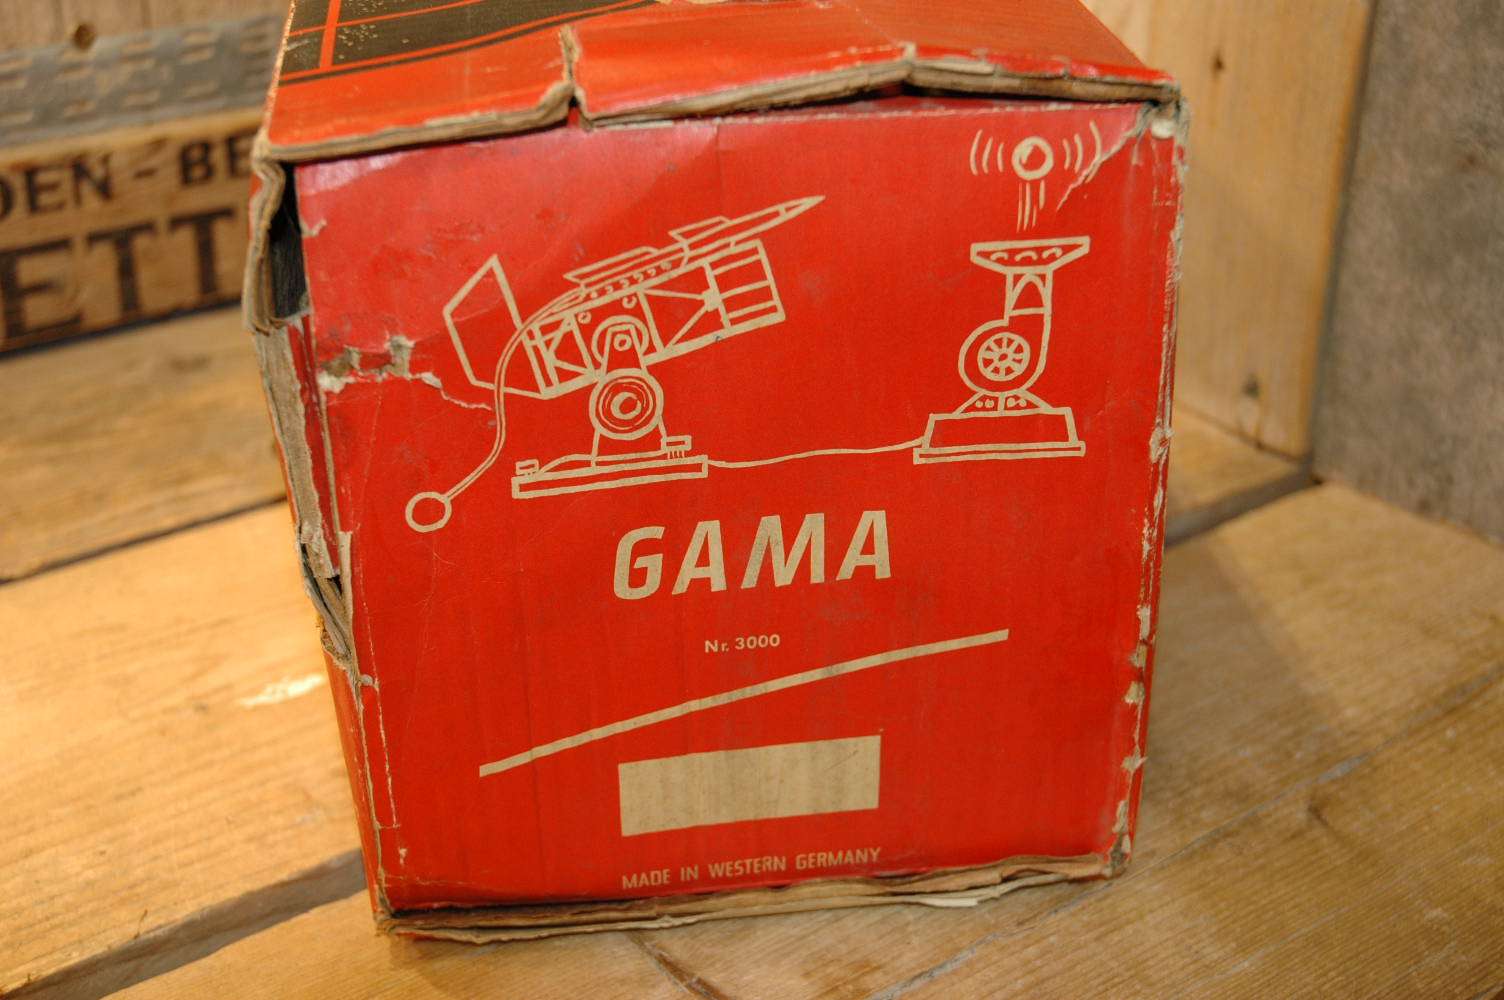 Gama - Electro Astronautic